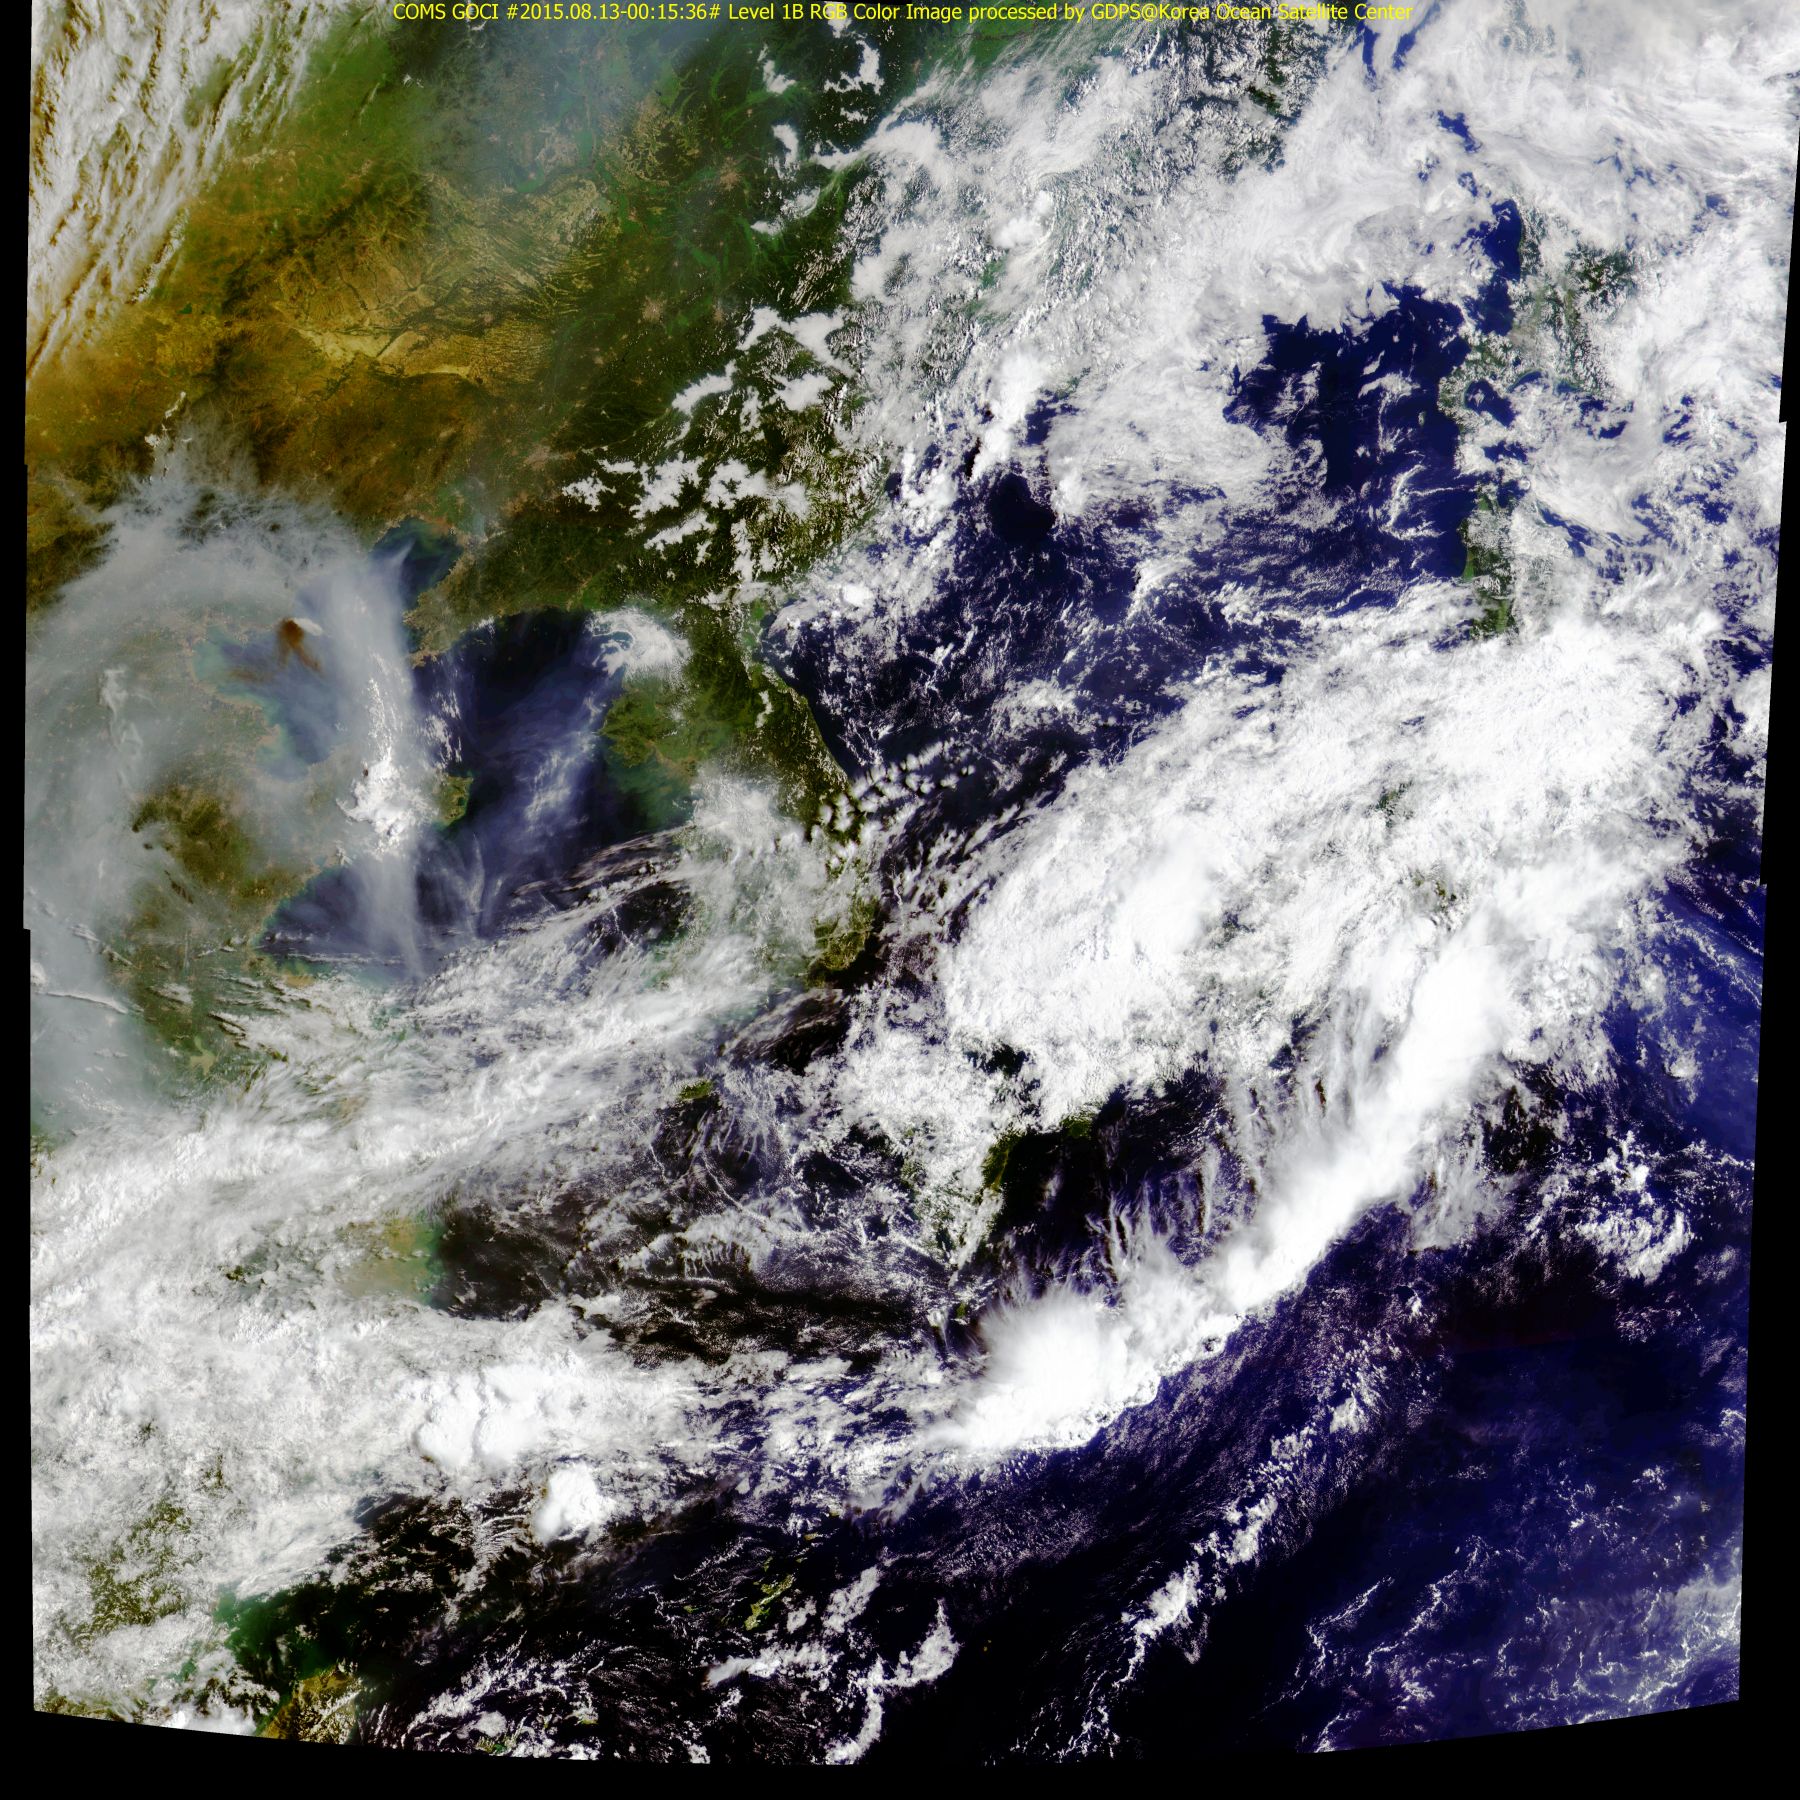 Tianjin - Chine - Explosion - Nuage de fumée - satellite - GOCI - COMS-1 - 13 août 2015 - 03:16:48 UTC - Korean Ocean Satellite Center